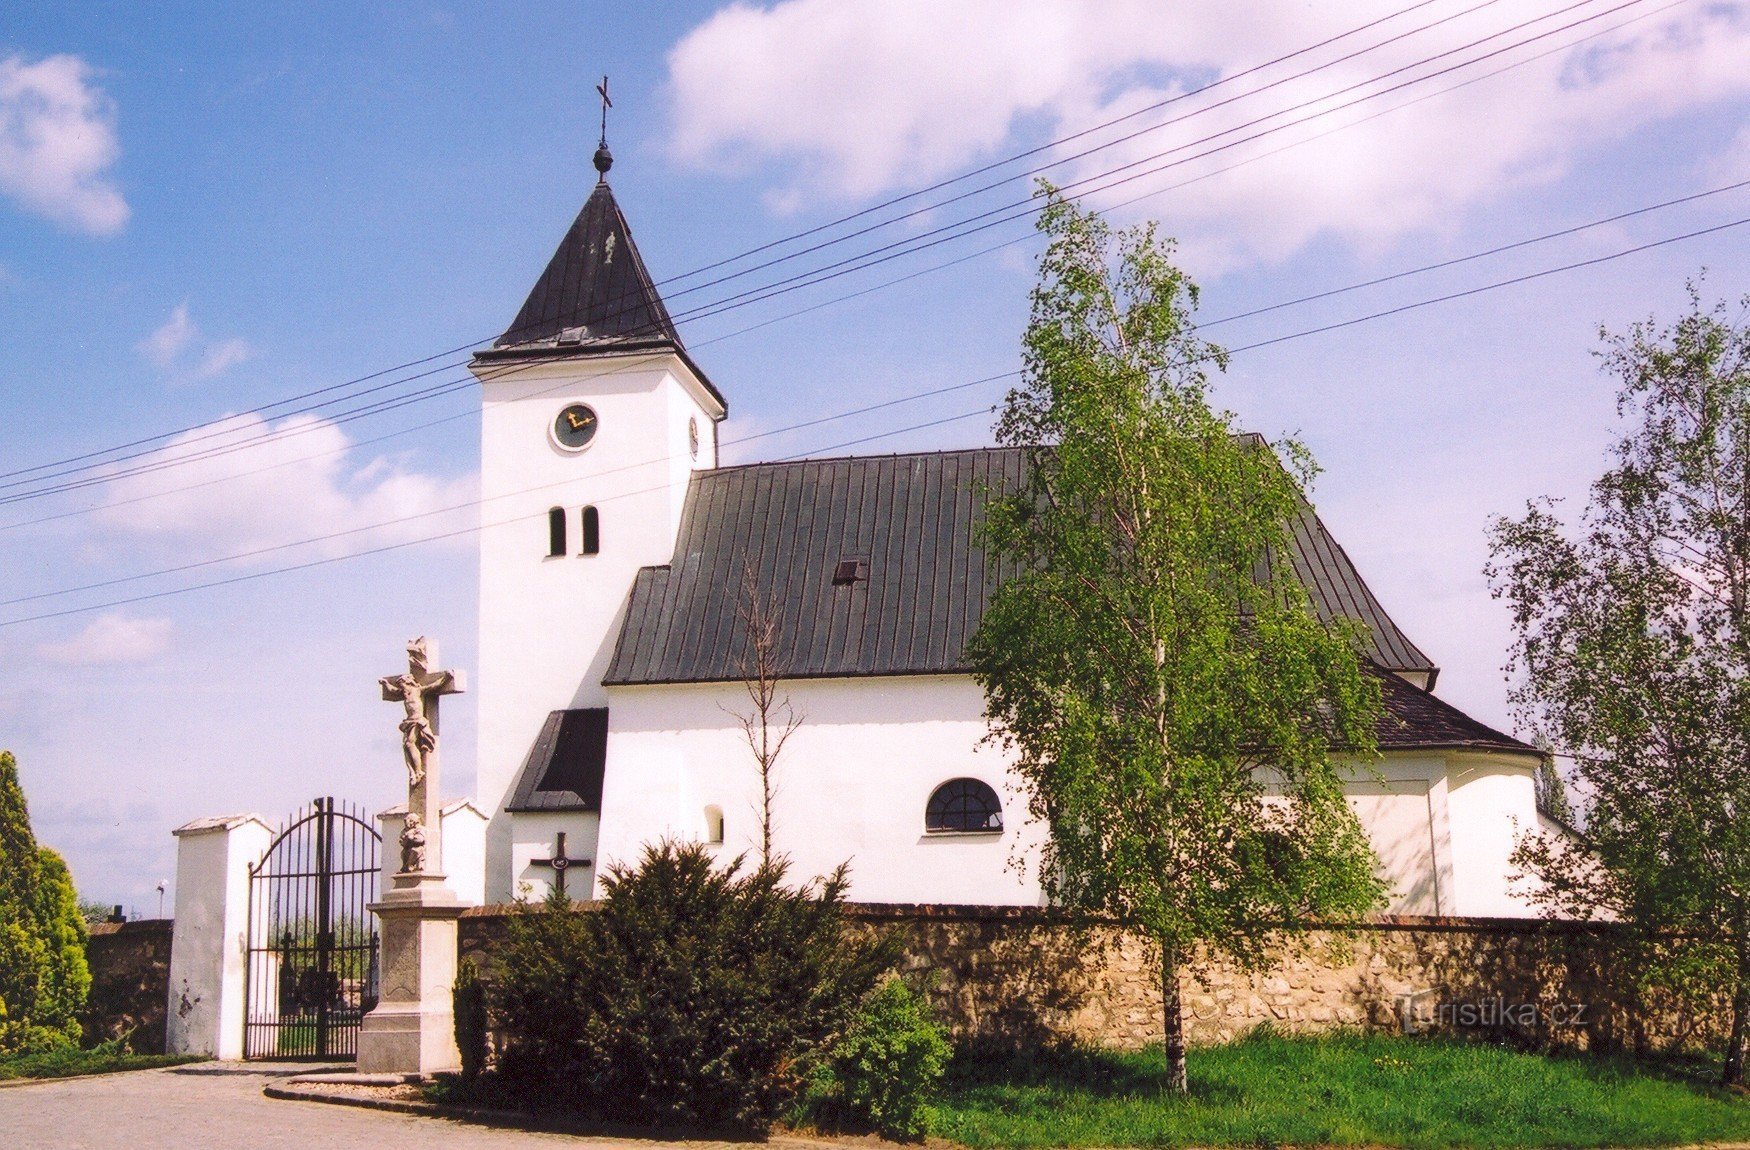 Žatčany - Church of the Holy Trinity